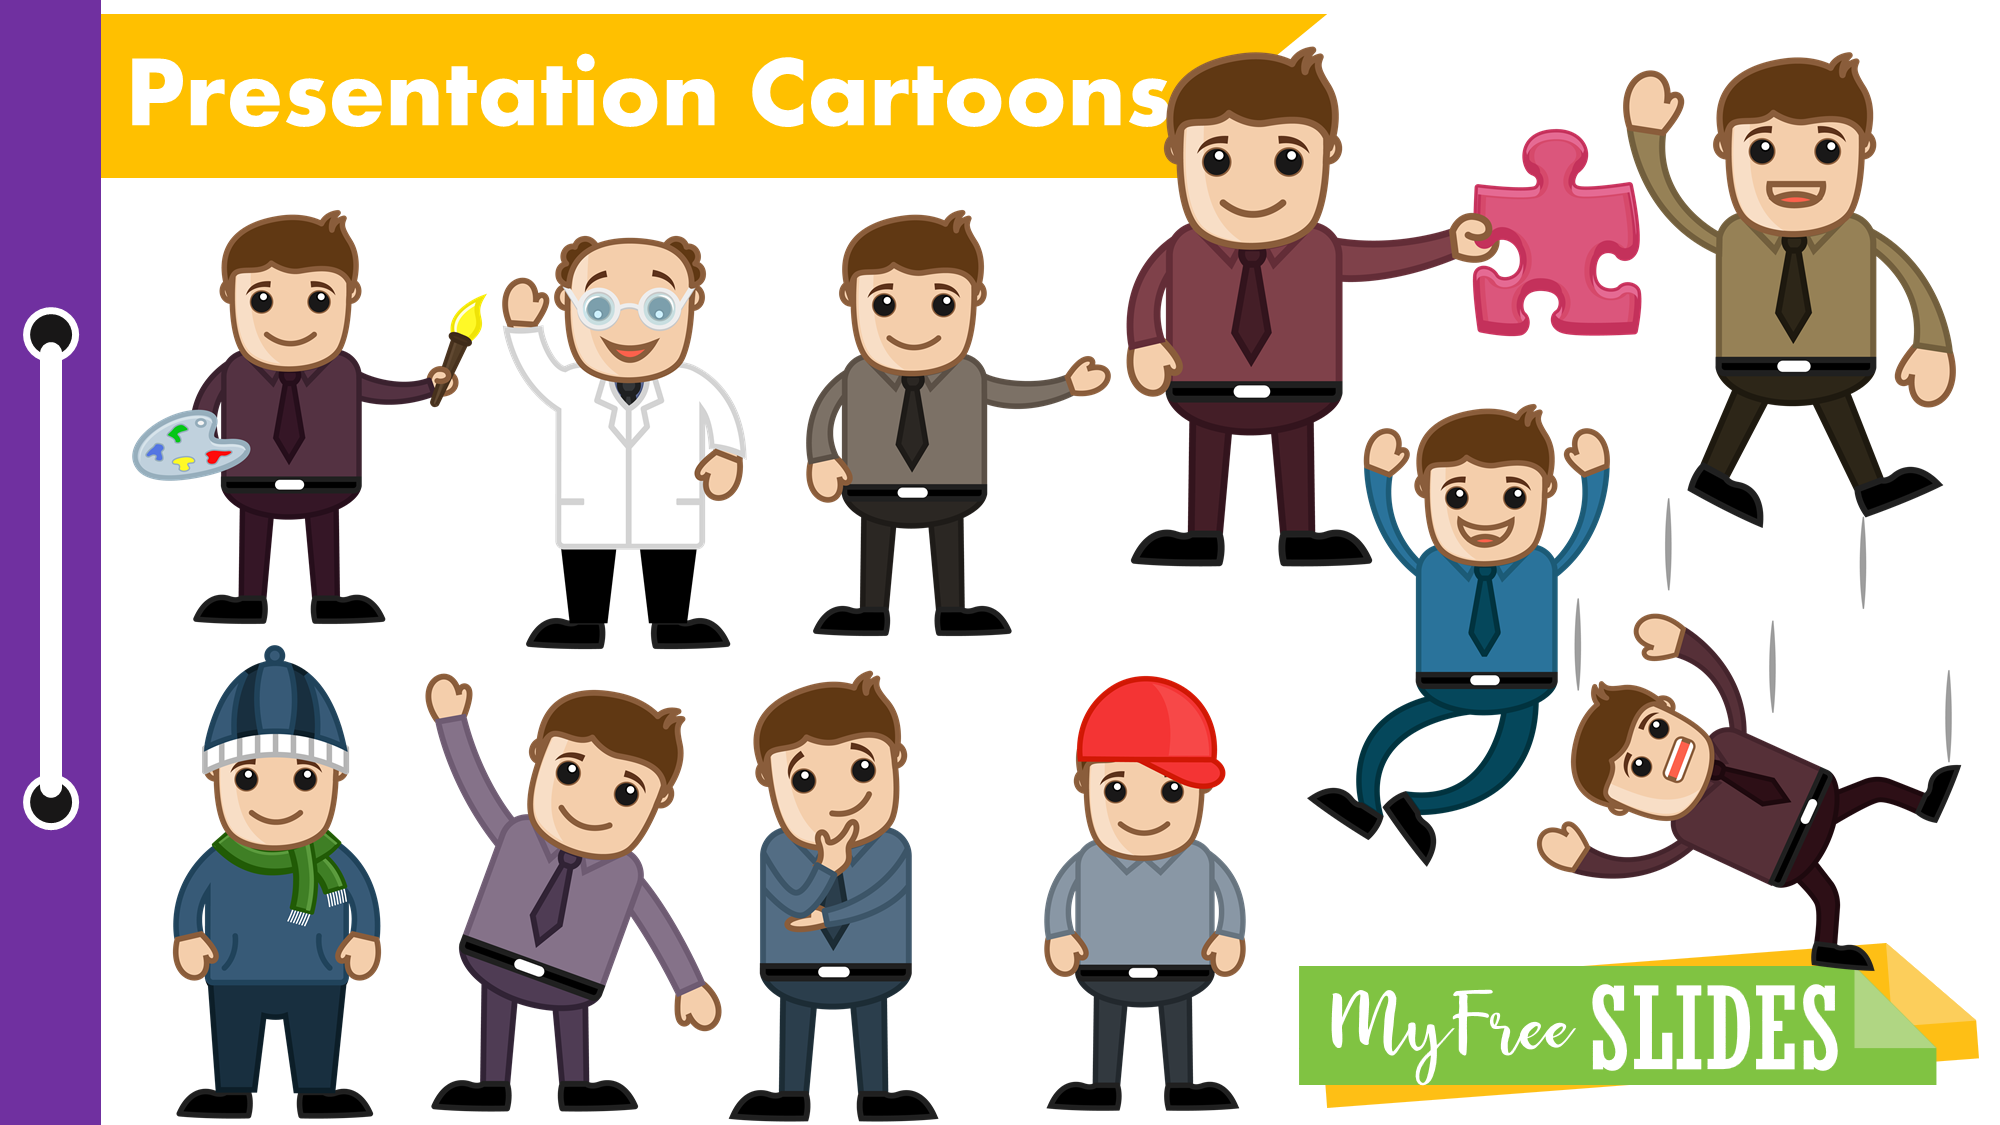 Presentation Cartoons